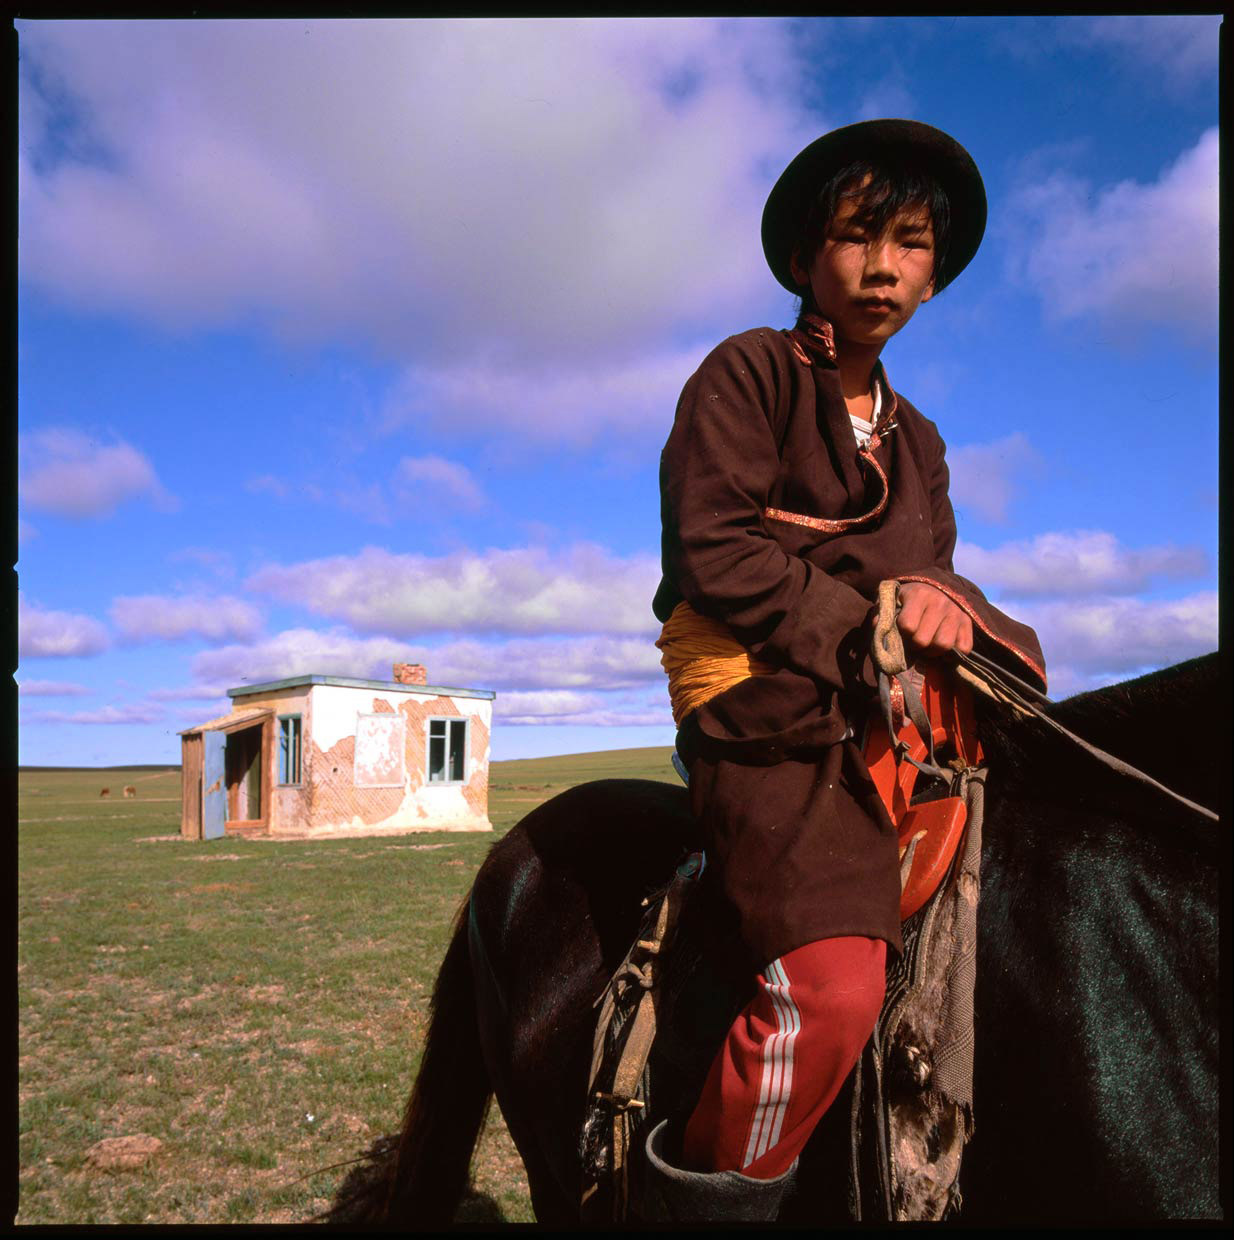 Mongolia_herder-boy-on-horse